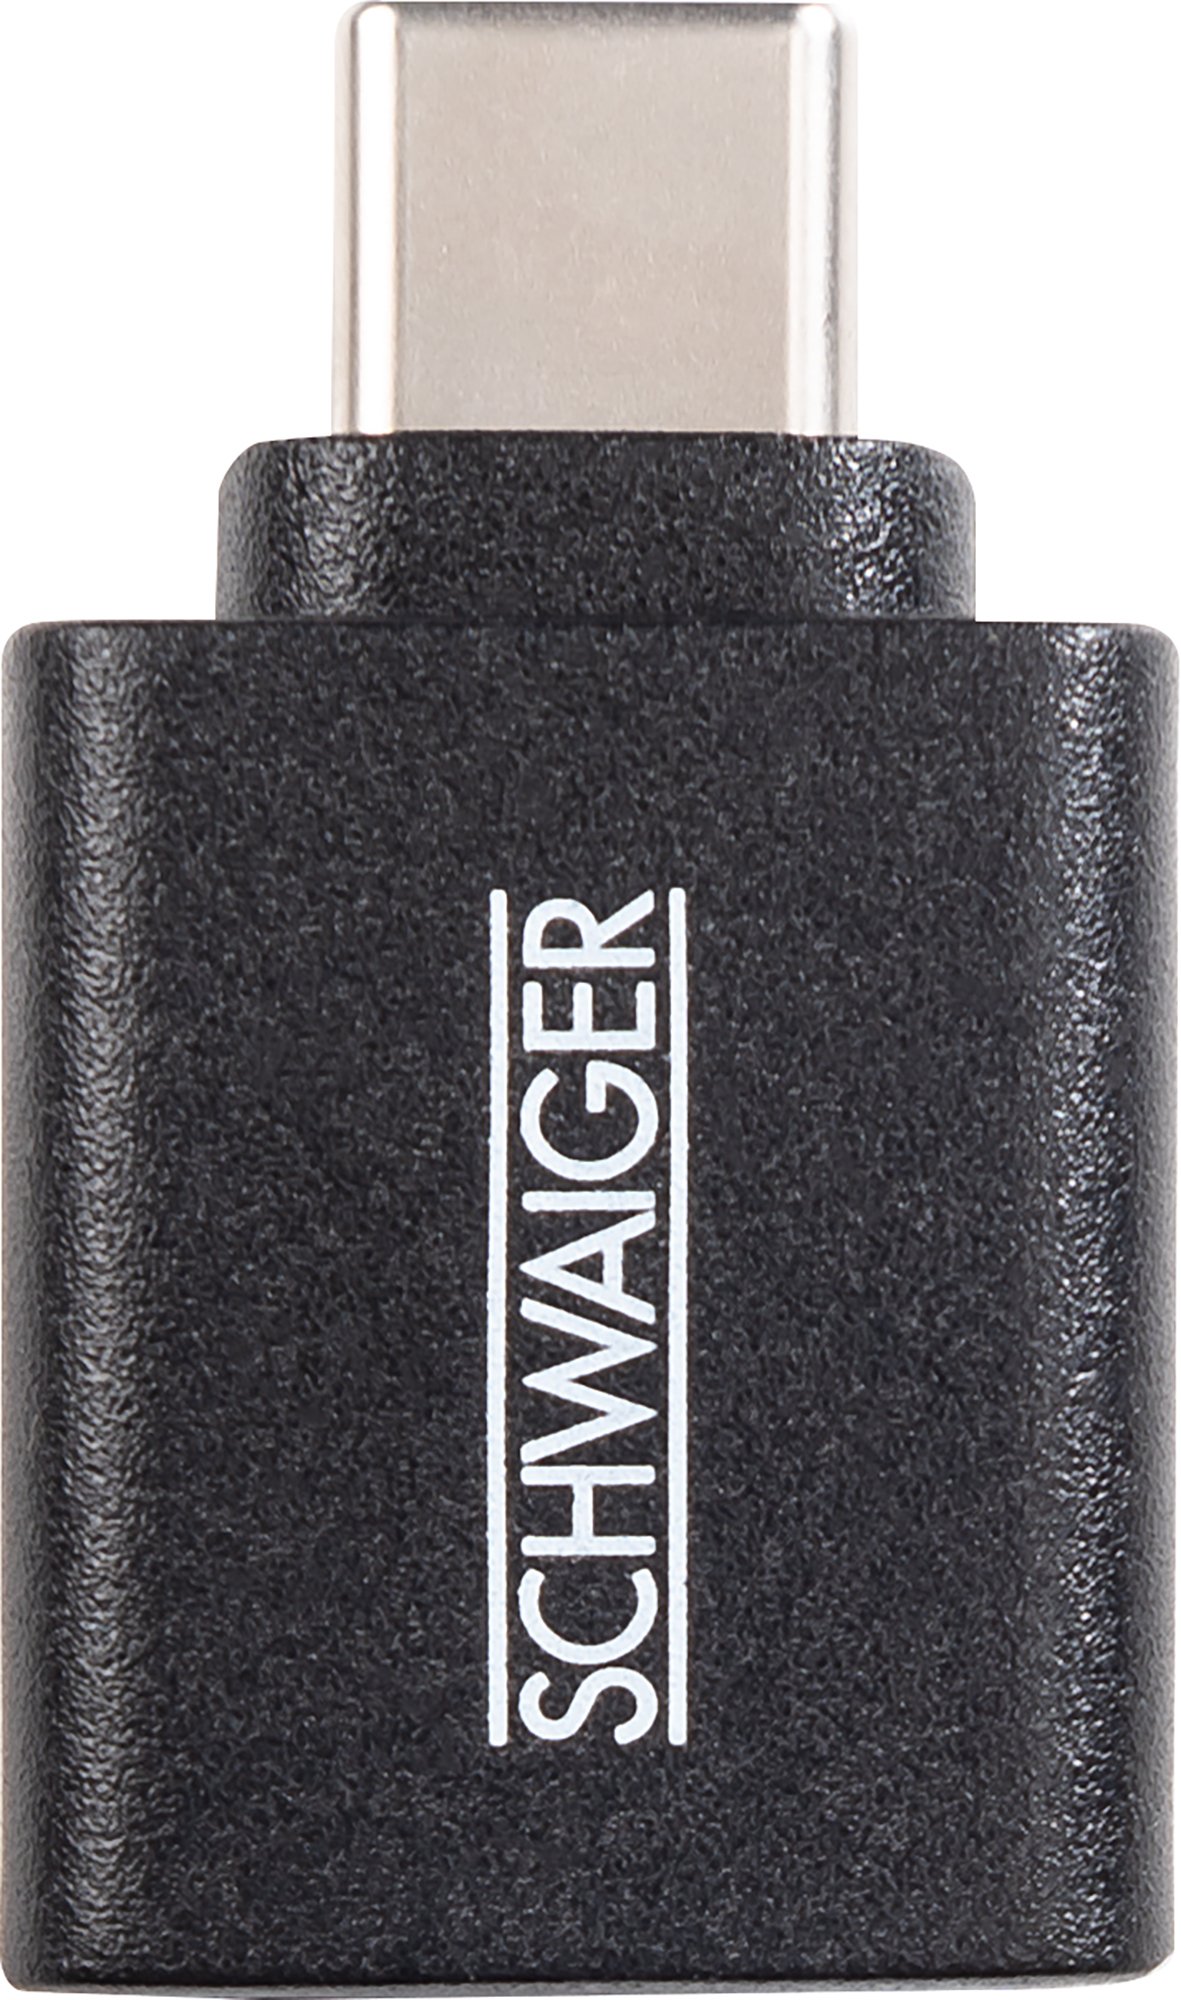 SCHWAIGER USB 3.1 Adapter, Schwarz CAU310533